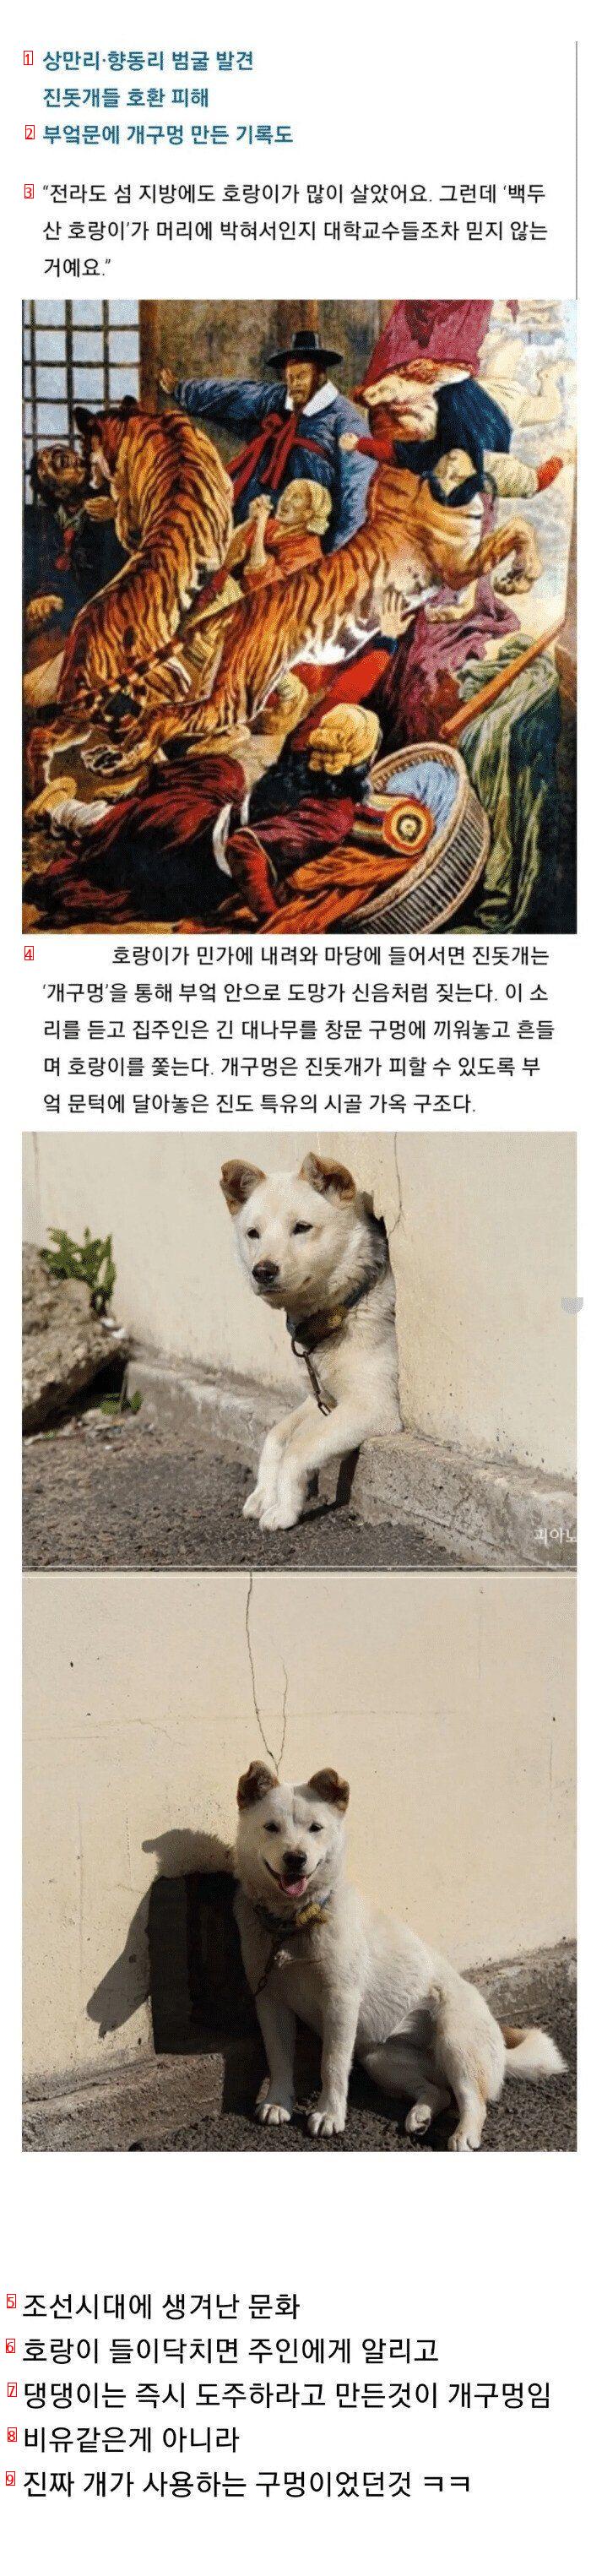 개구멍이 한국의 유서깊은 가옥구조인 이유.jpg